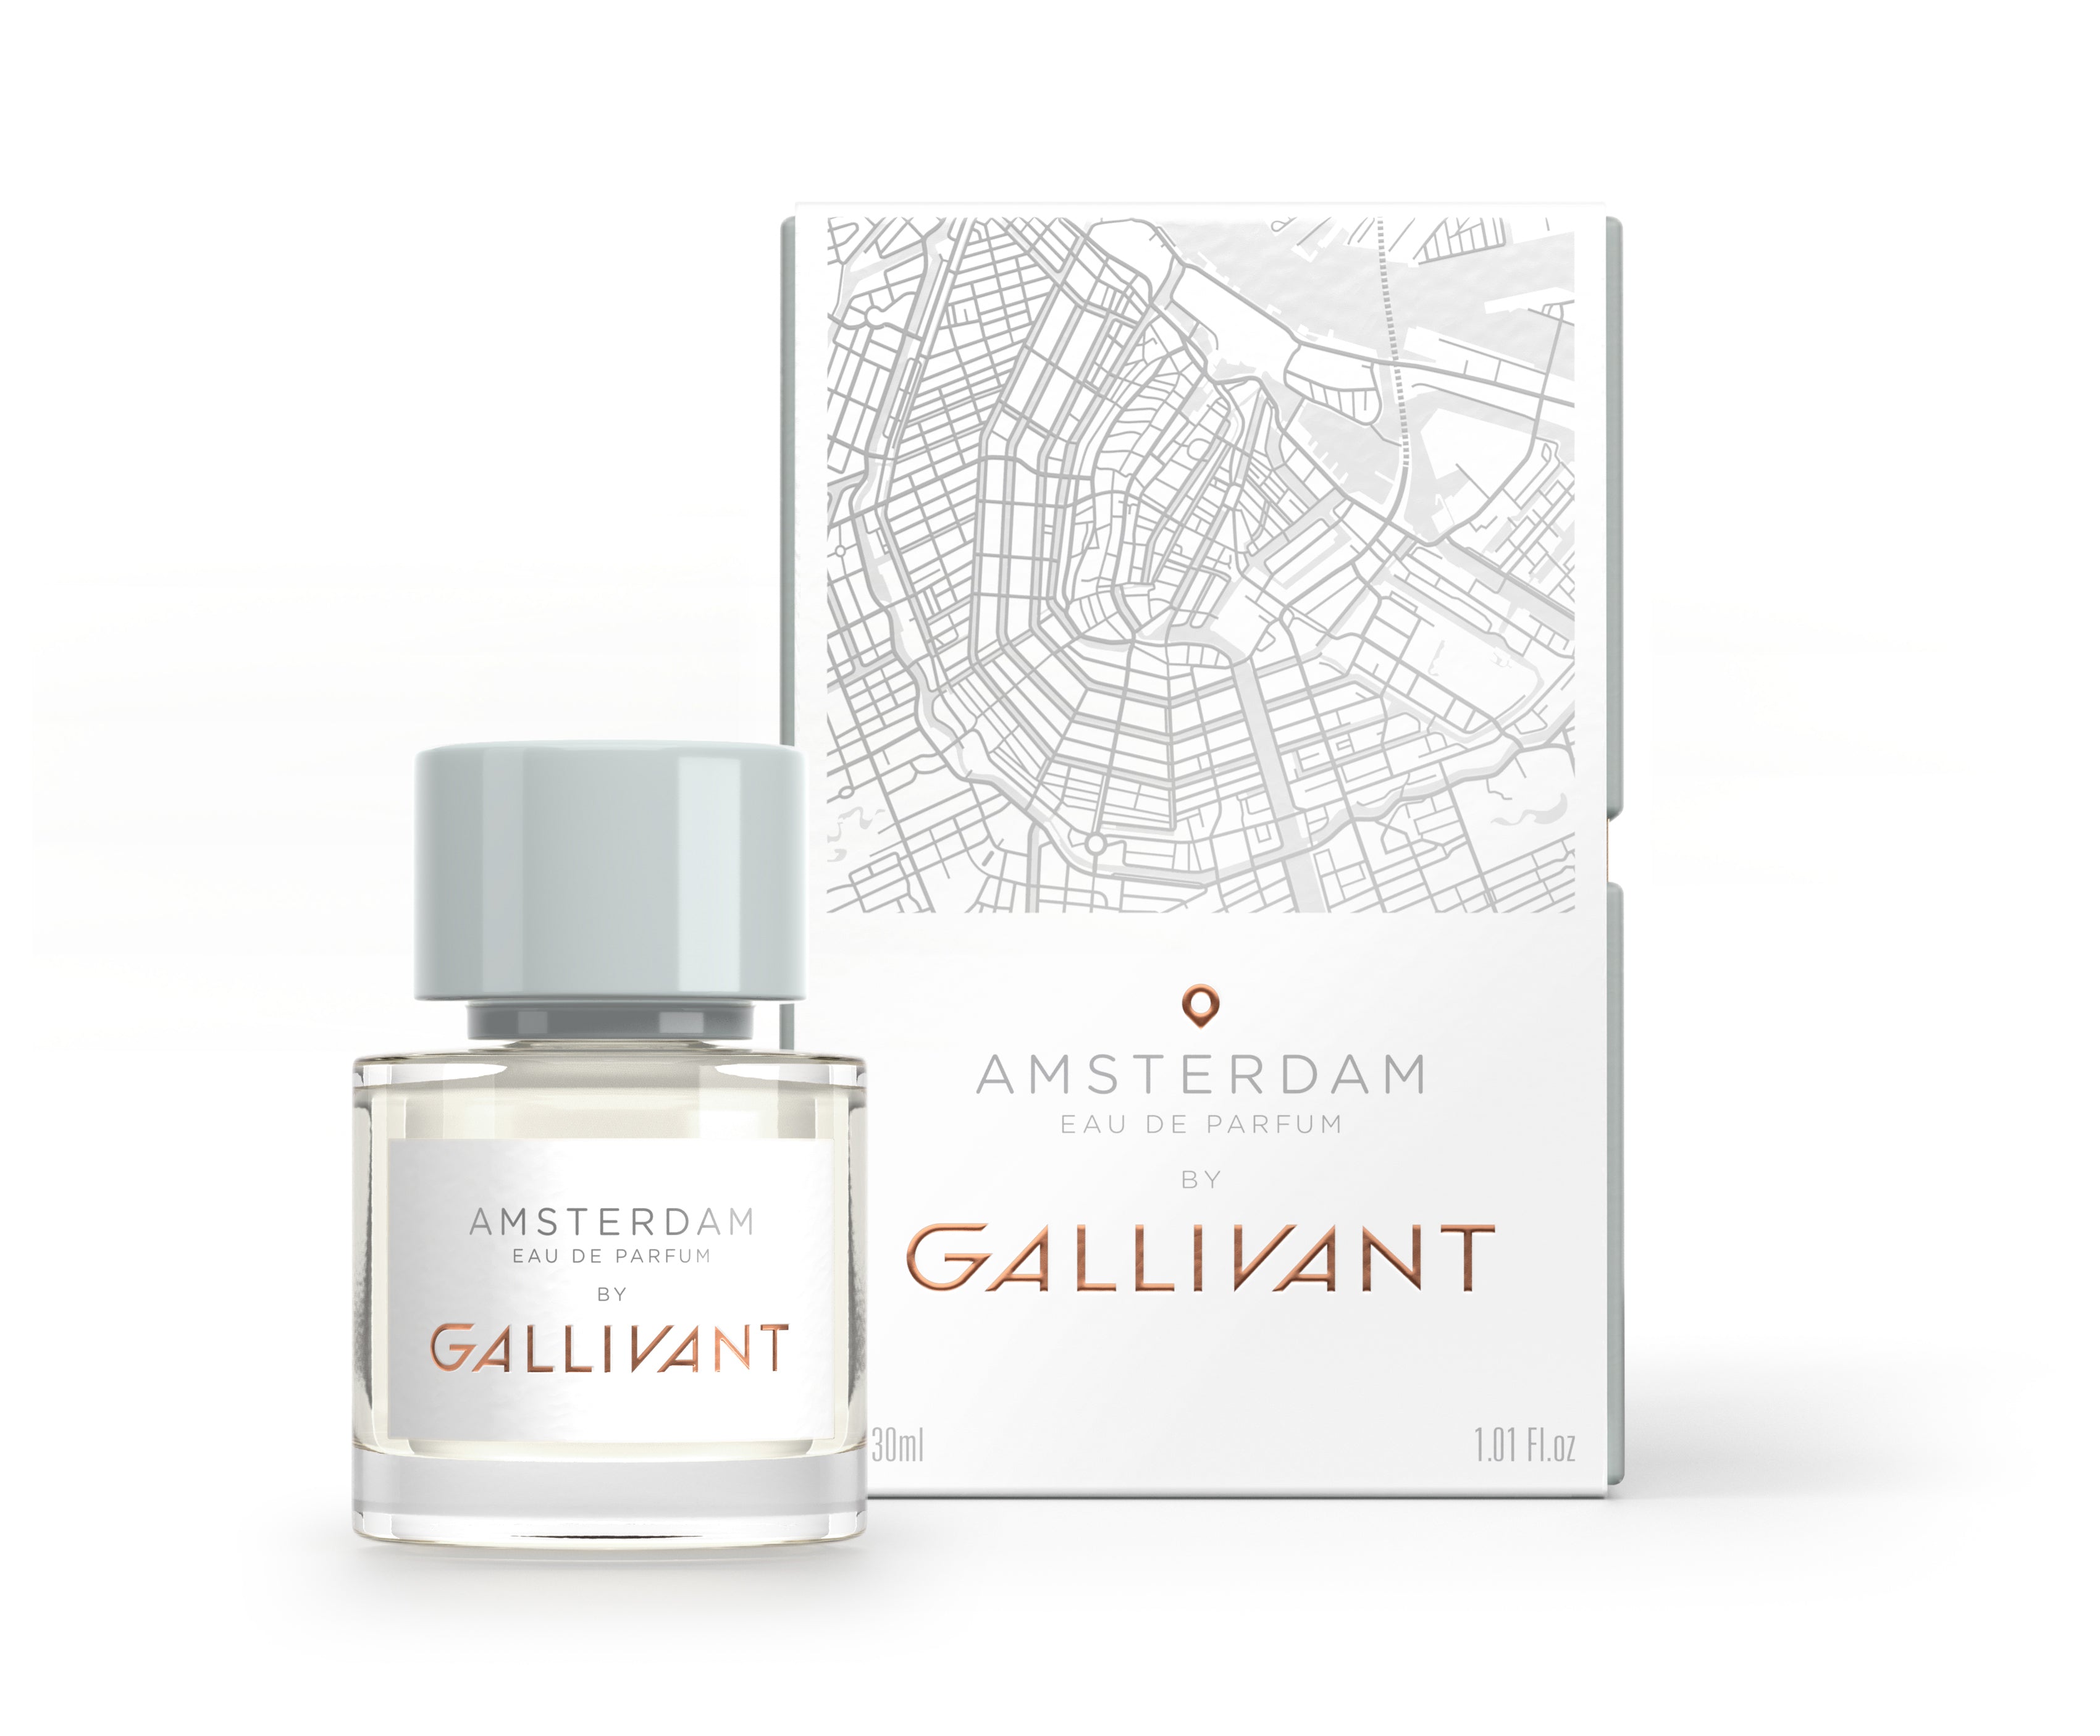 Amsterdam Eau de Parfum 30ml Bottle and Box by Gallivant